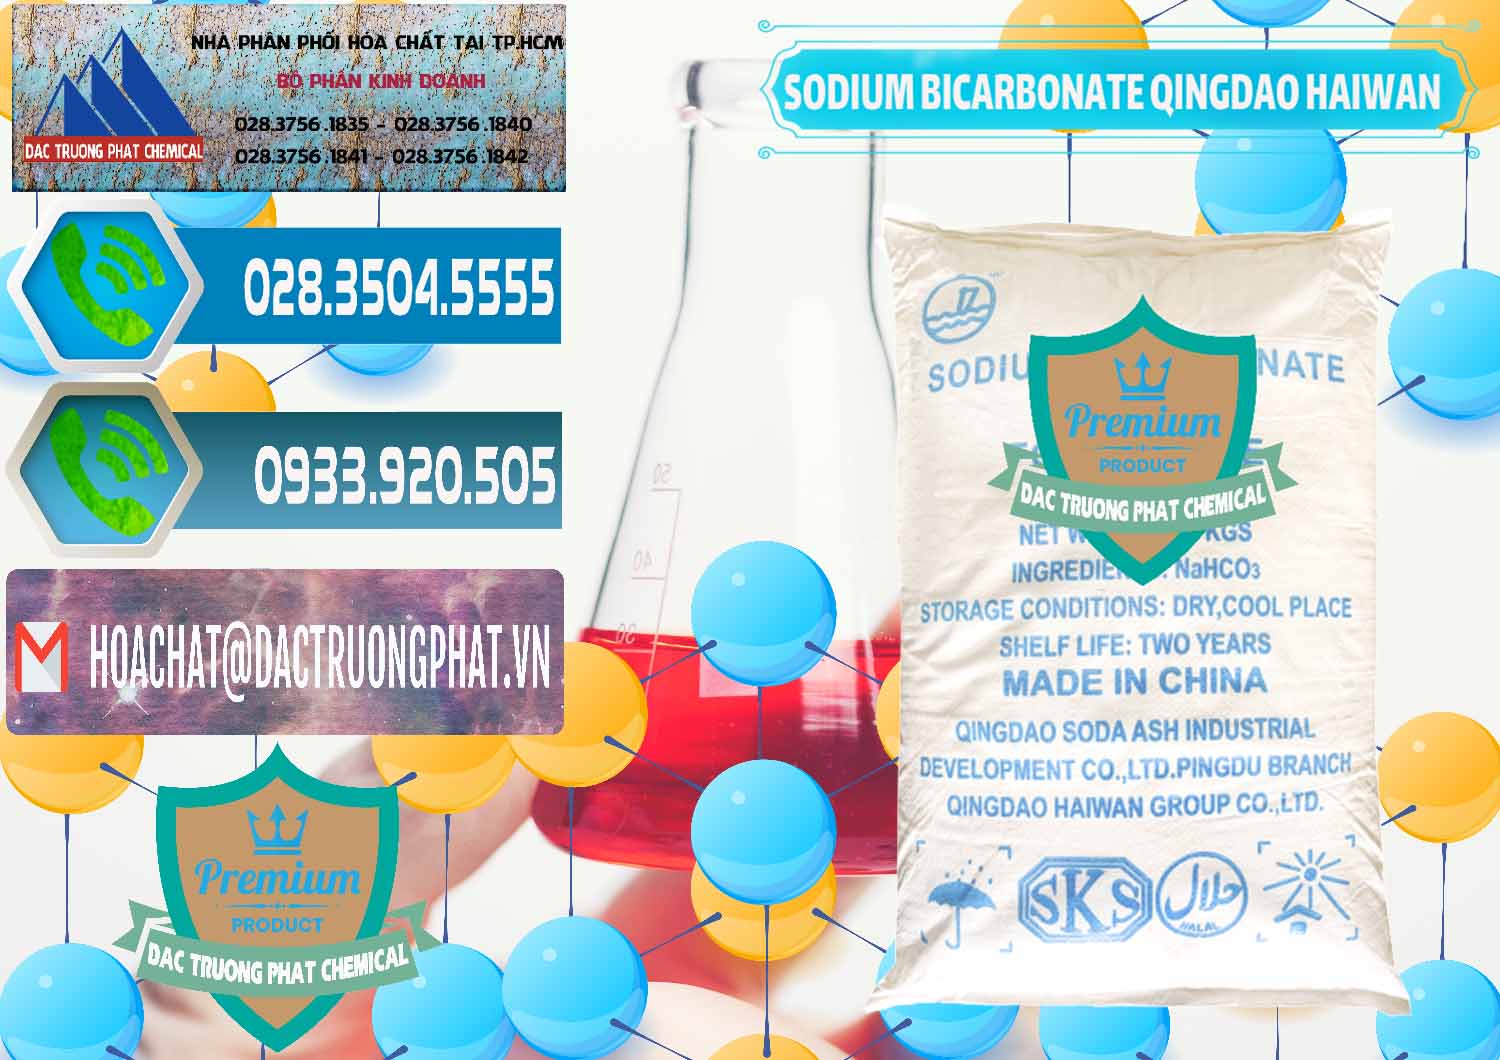 Chuyên bán - phân phối Sodium Bicarbonate – Bicar NaHCO3 Food Grade Qingdao Haiwan Trung Quốc China - 0258 - Công ty chuyên kinh doanh & phân phối hóa chất tại TP.HCM - congtyhoachat.net